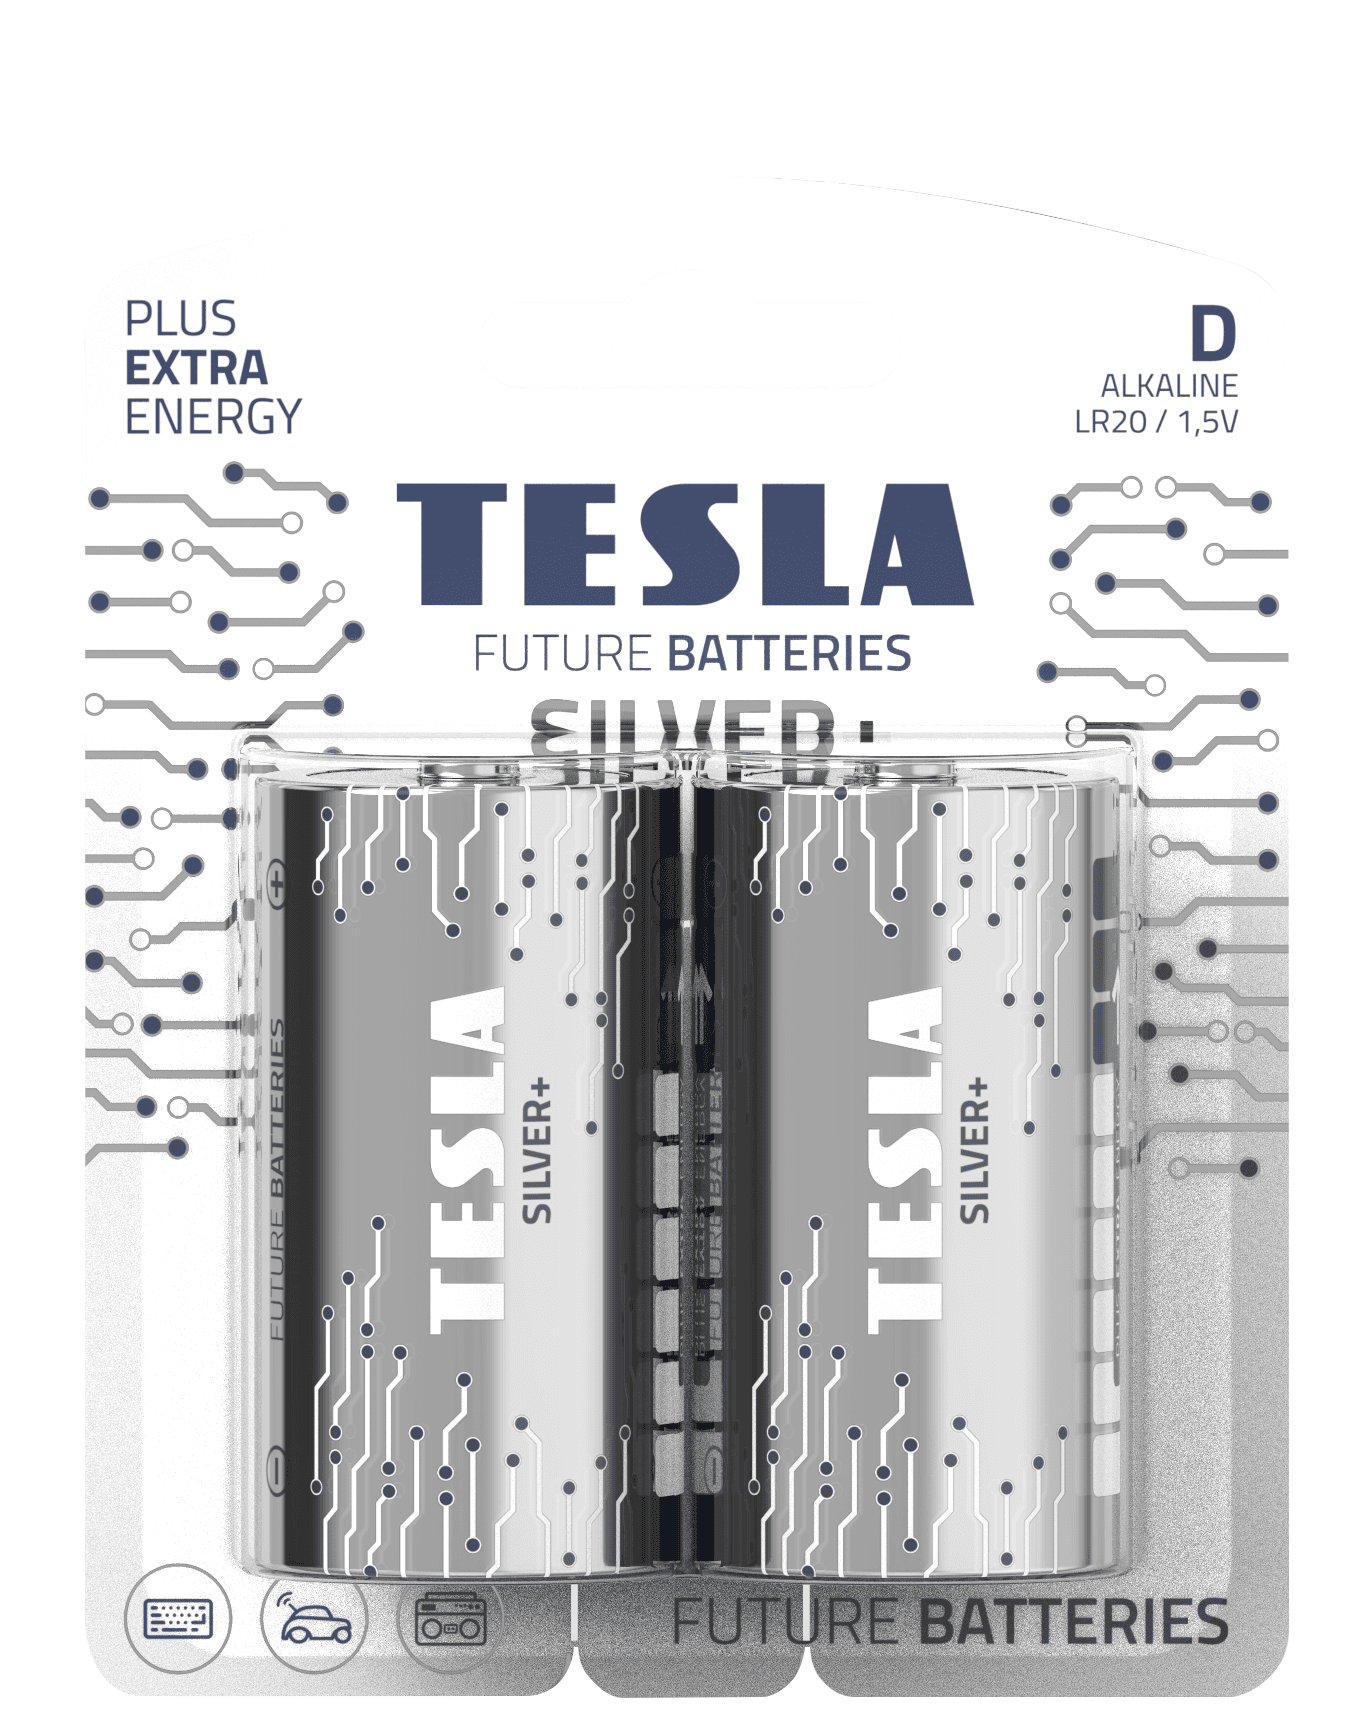 Alkaline batteries TESLA D/LR20/1,5V 2pcs SILVER+